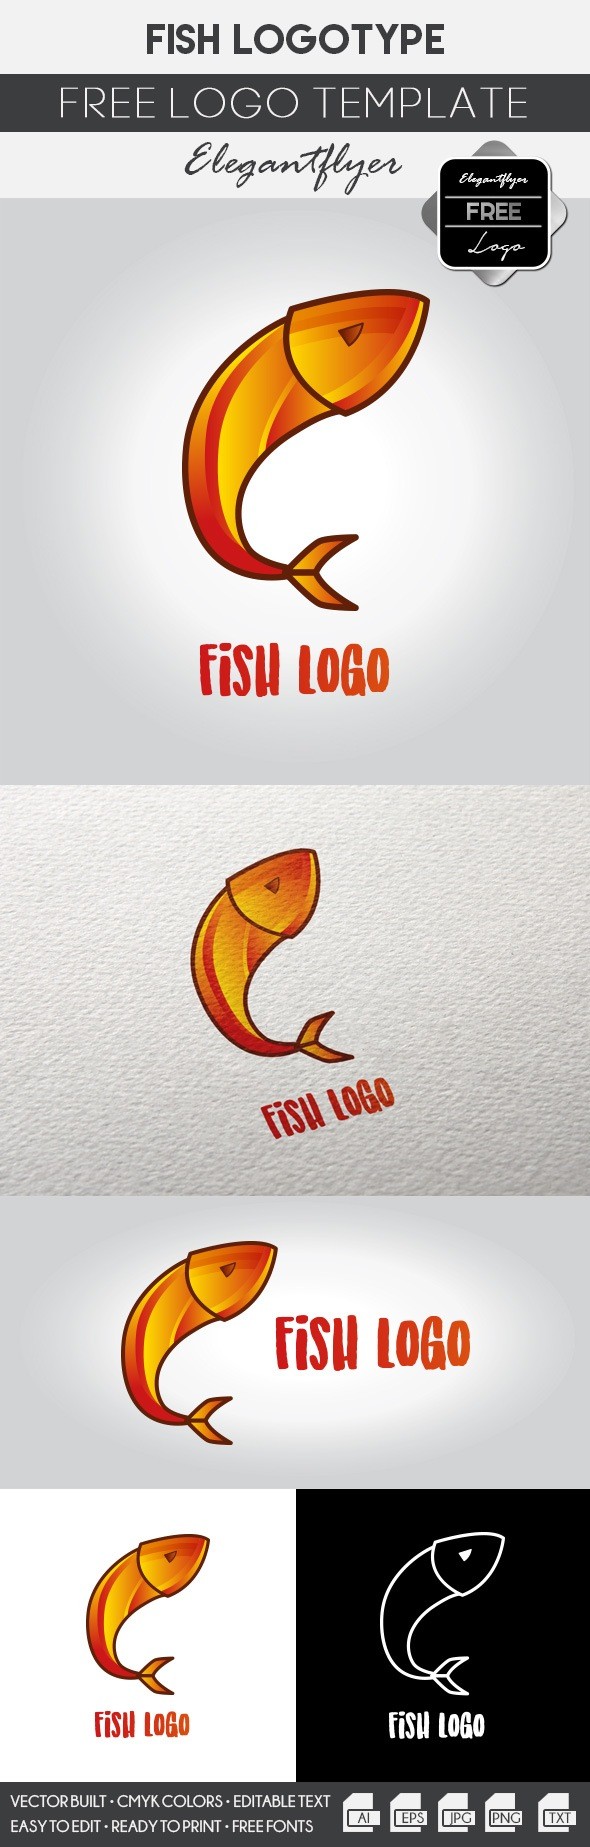 Fish logo by ElegantFlyer